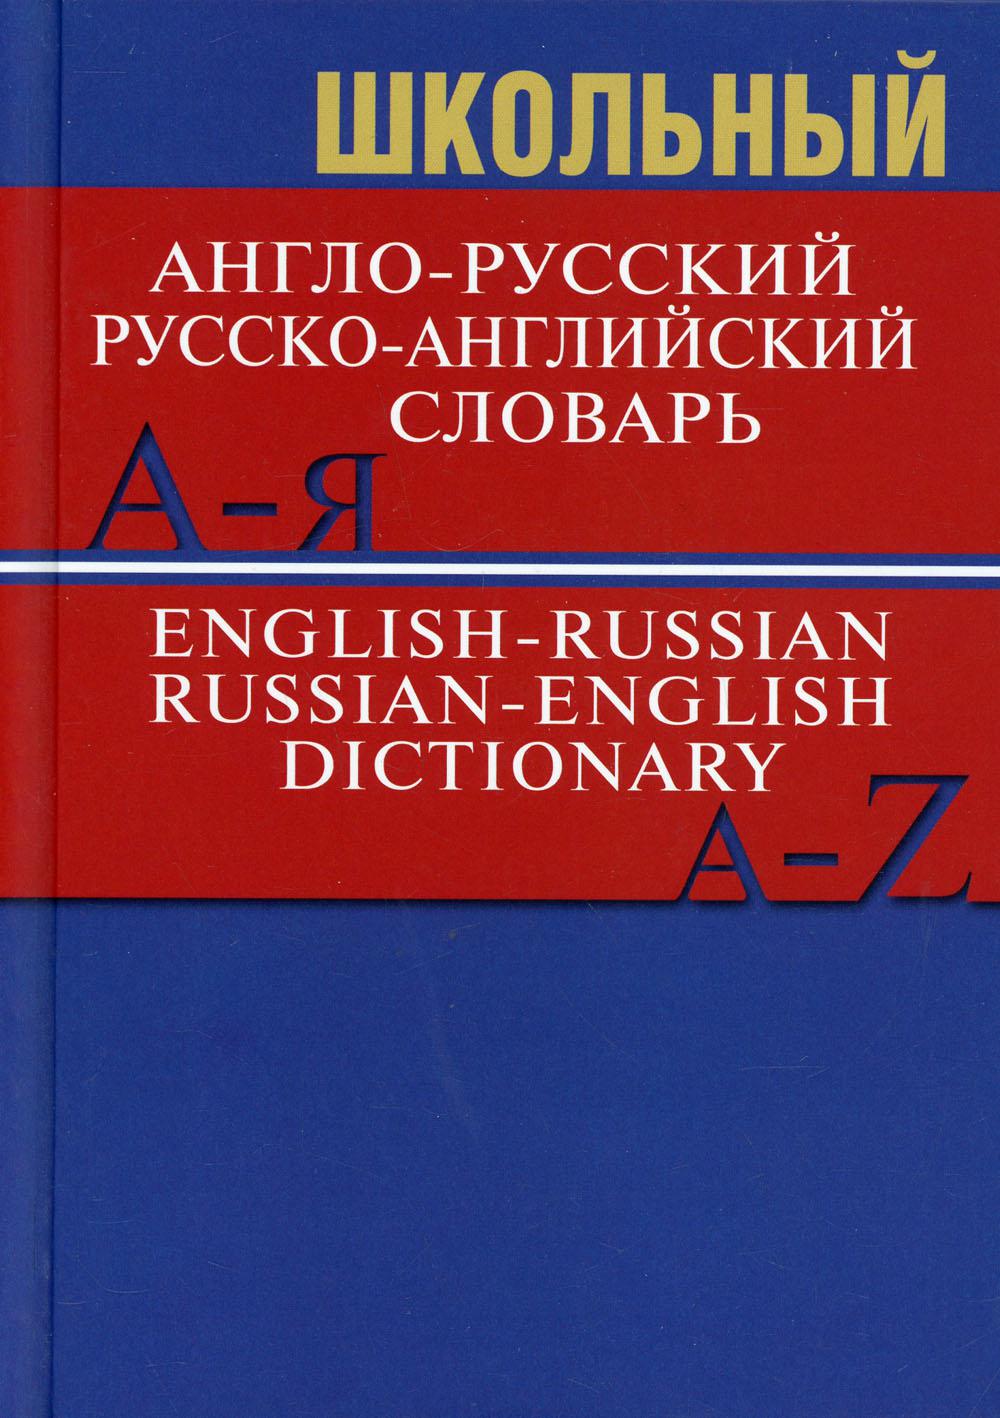 фото Книга школьный англо-русский, русско-английский словарь вако